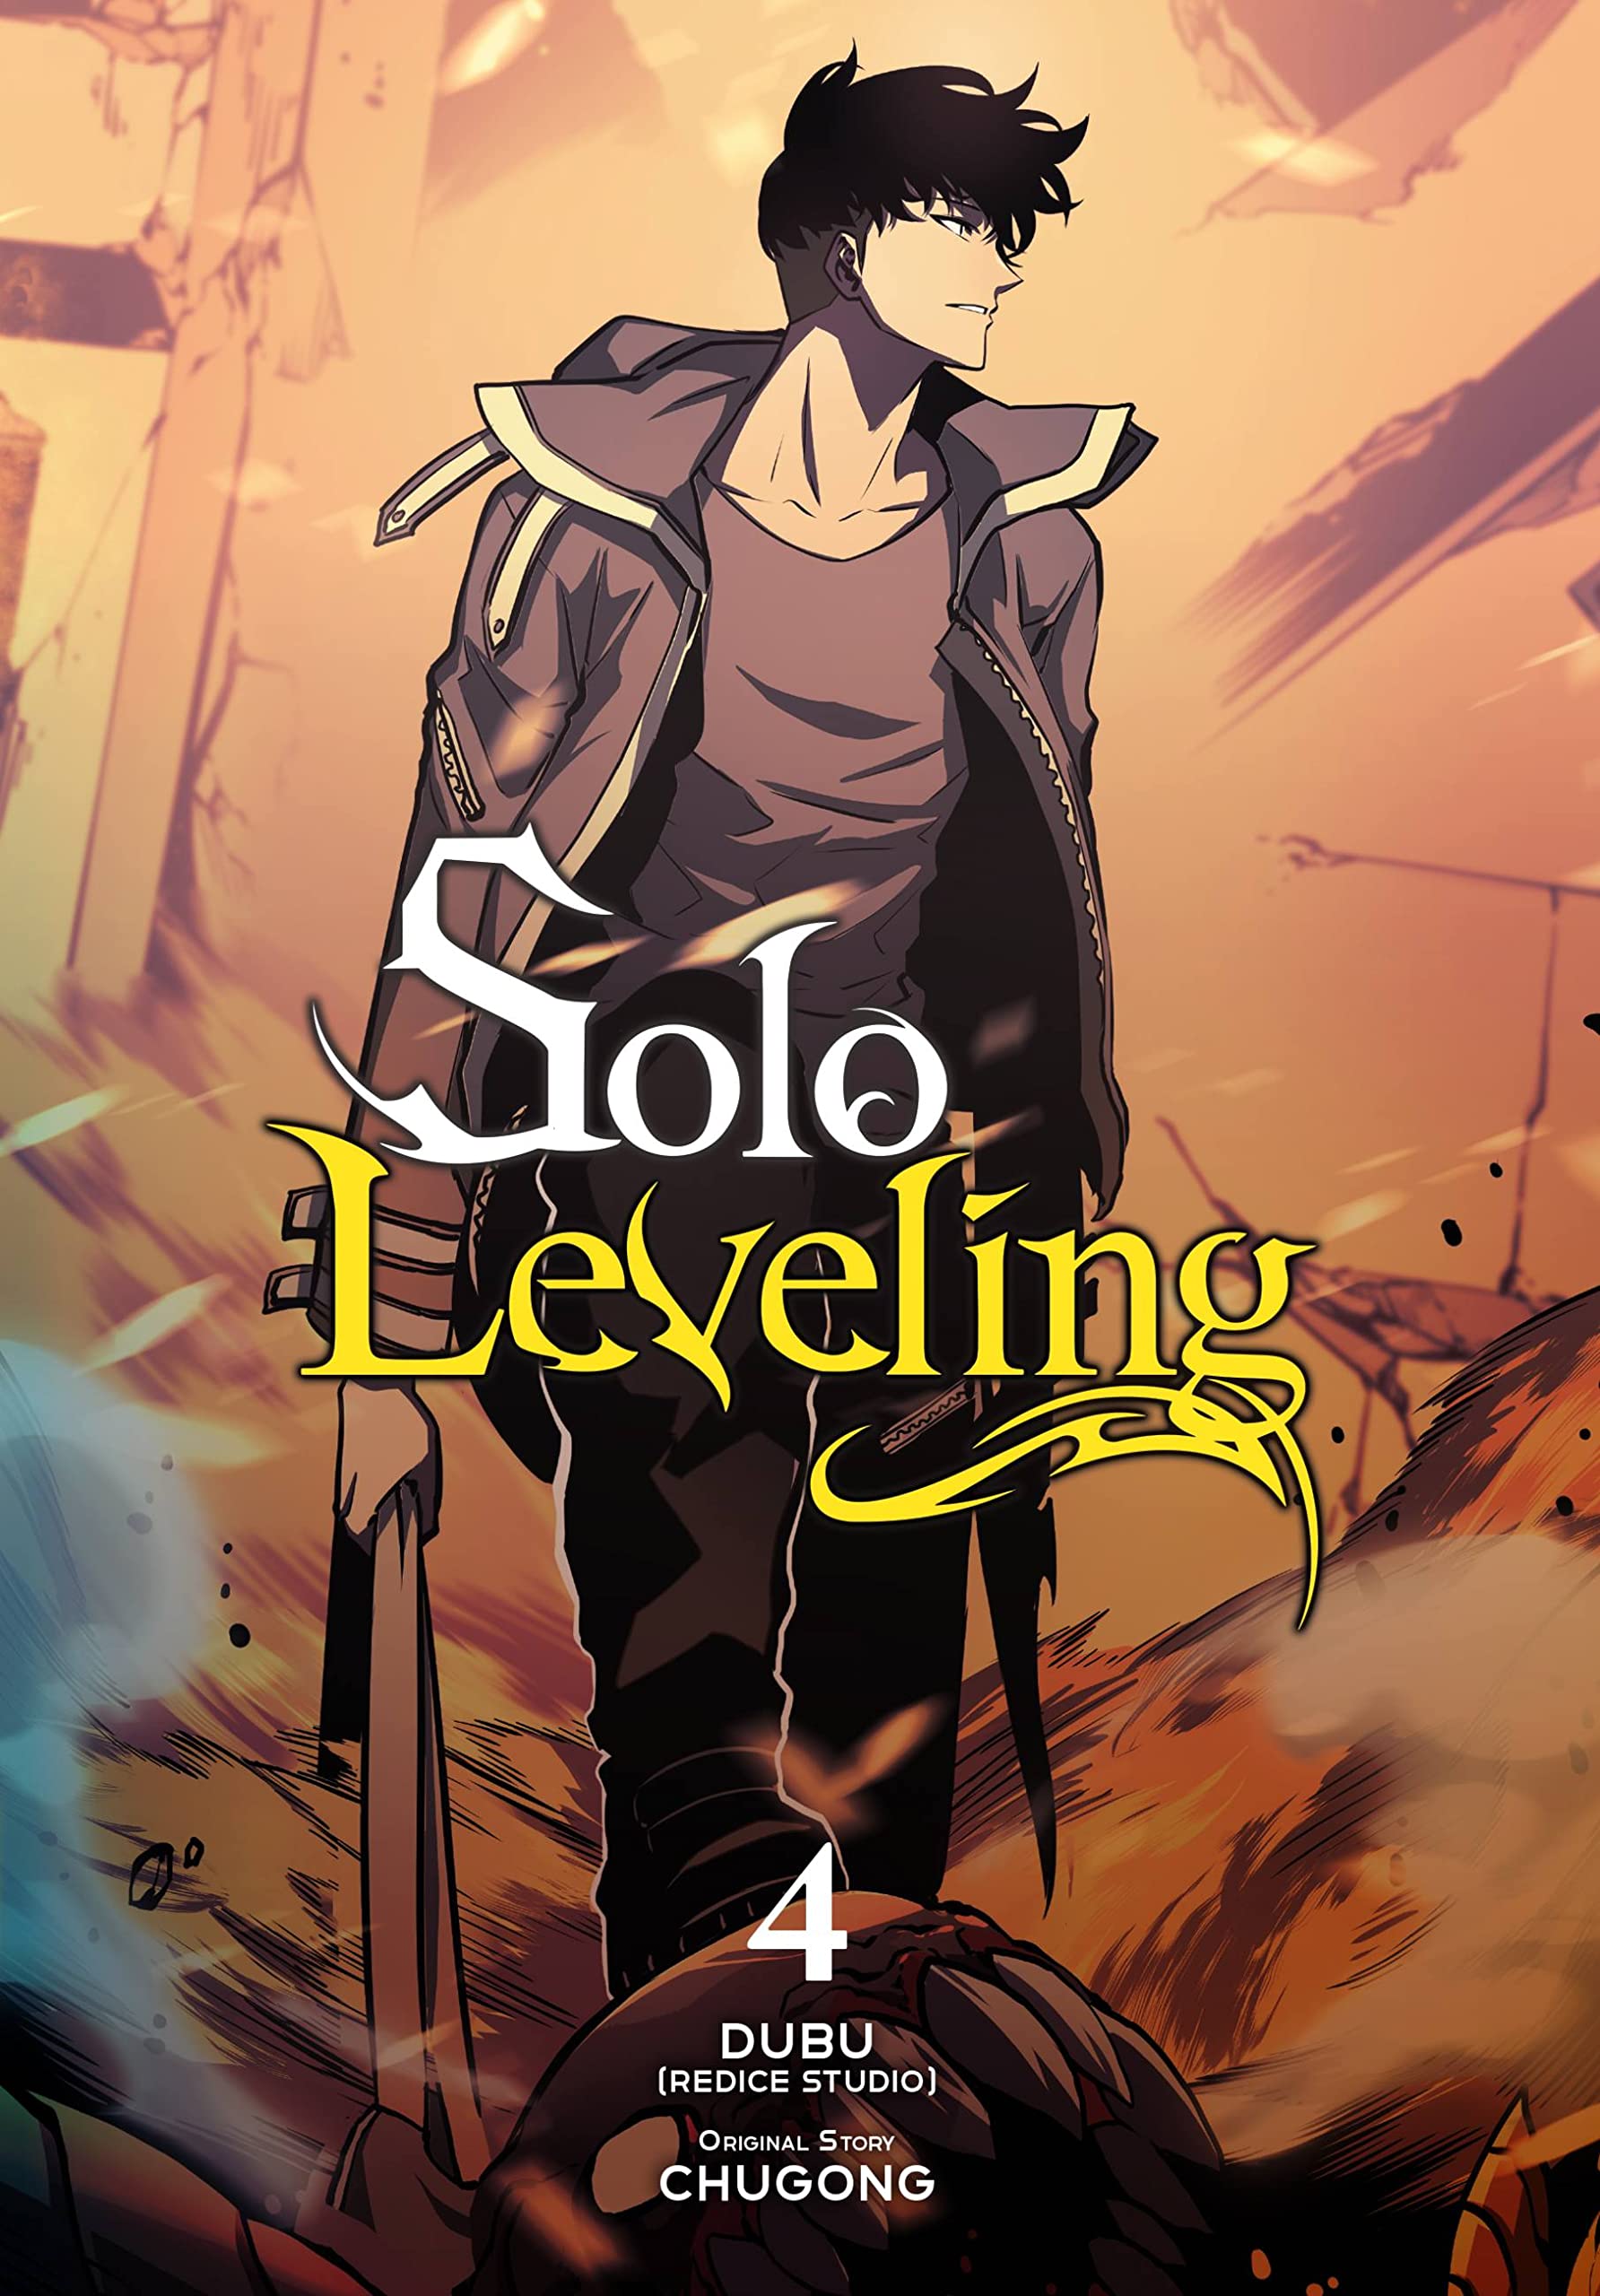 Solo Leveling Manga Volume 4